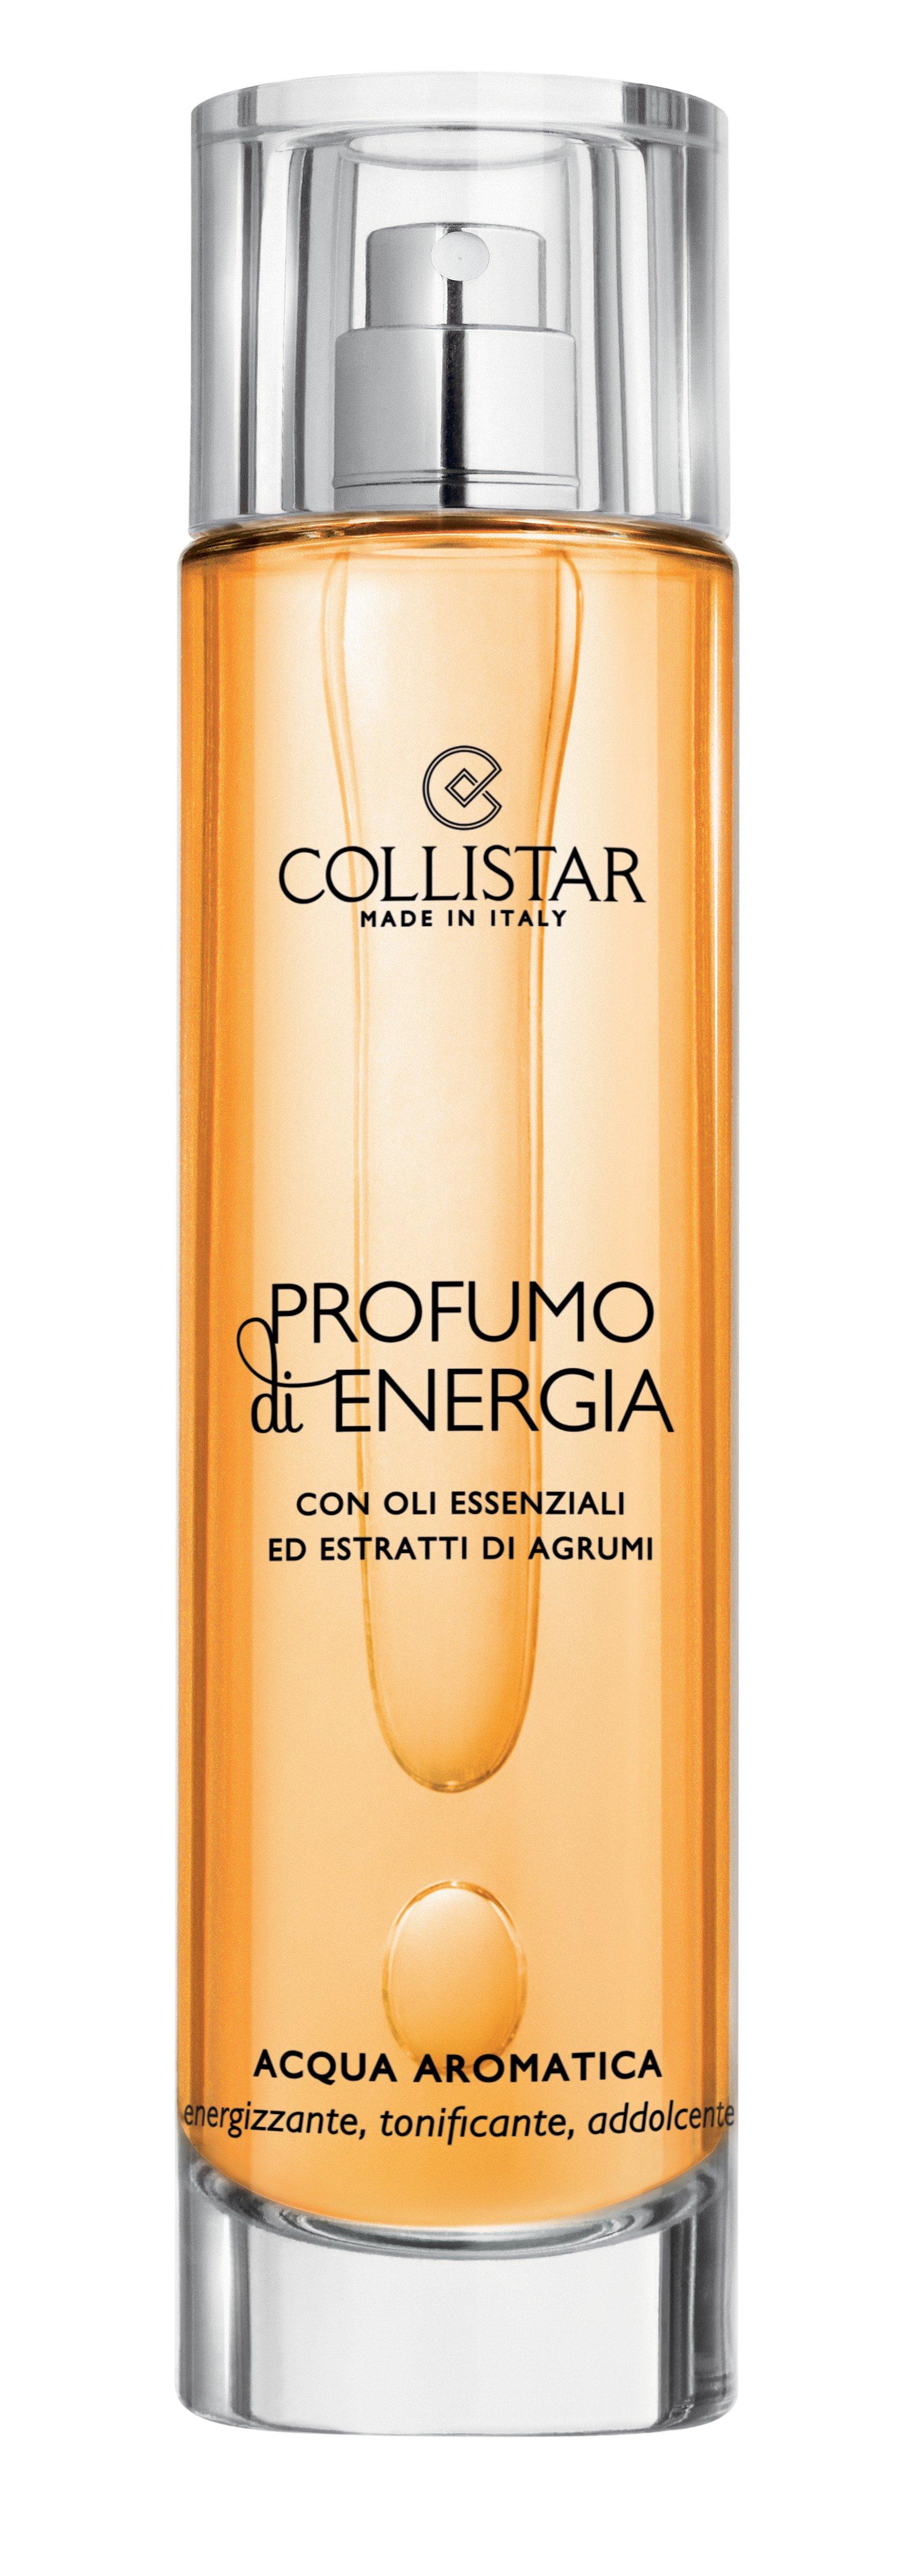 Image of COLLISTAR PROFUMO DI ENERGIA Produmo di Energia Body Aromatic Water - 100 ml